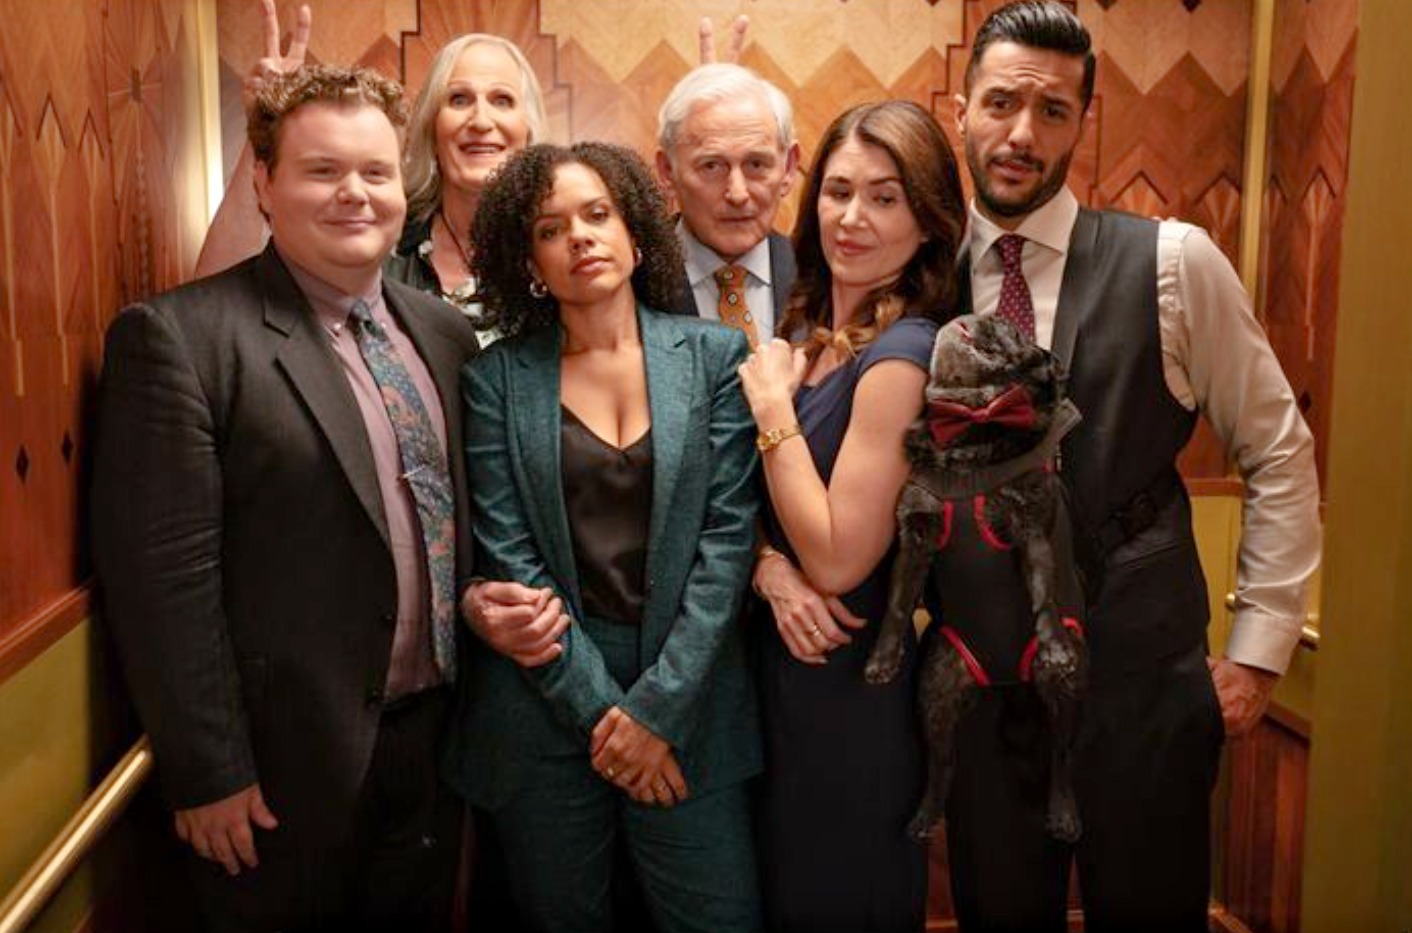 Family Law estreia sua 2ª temporada no Globoplay 